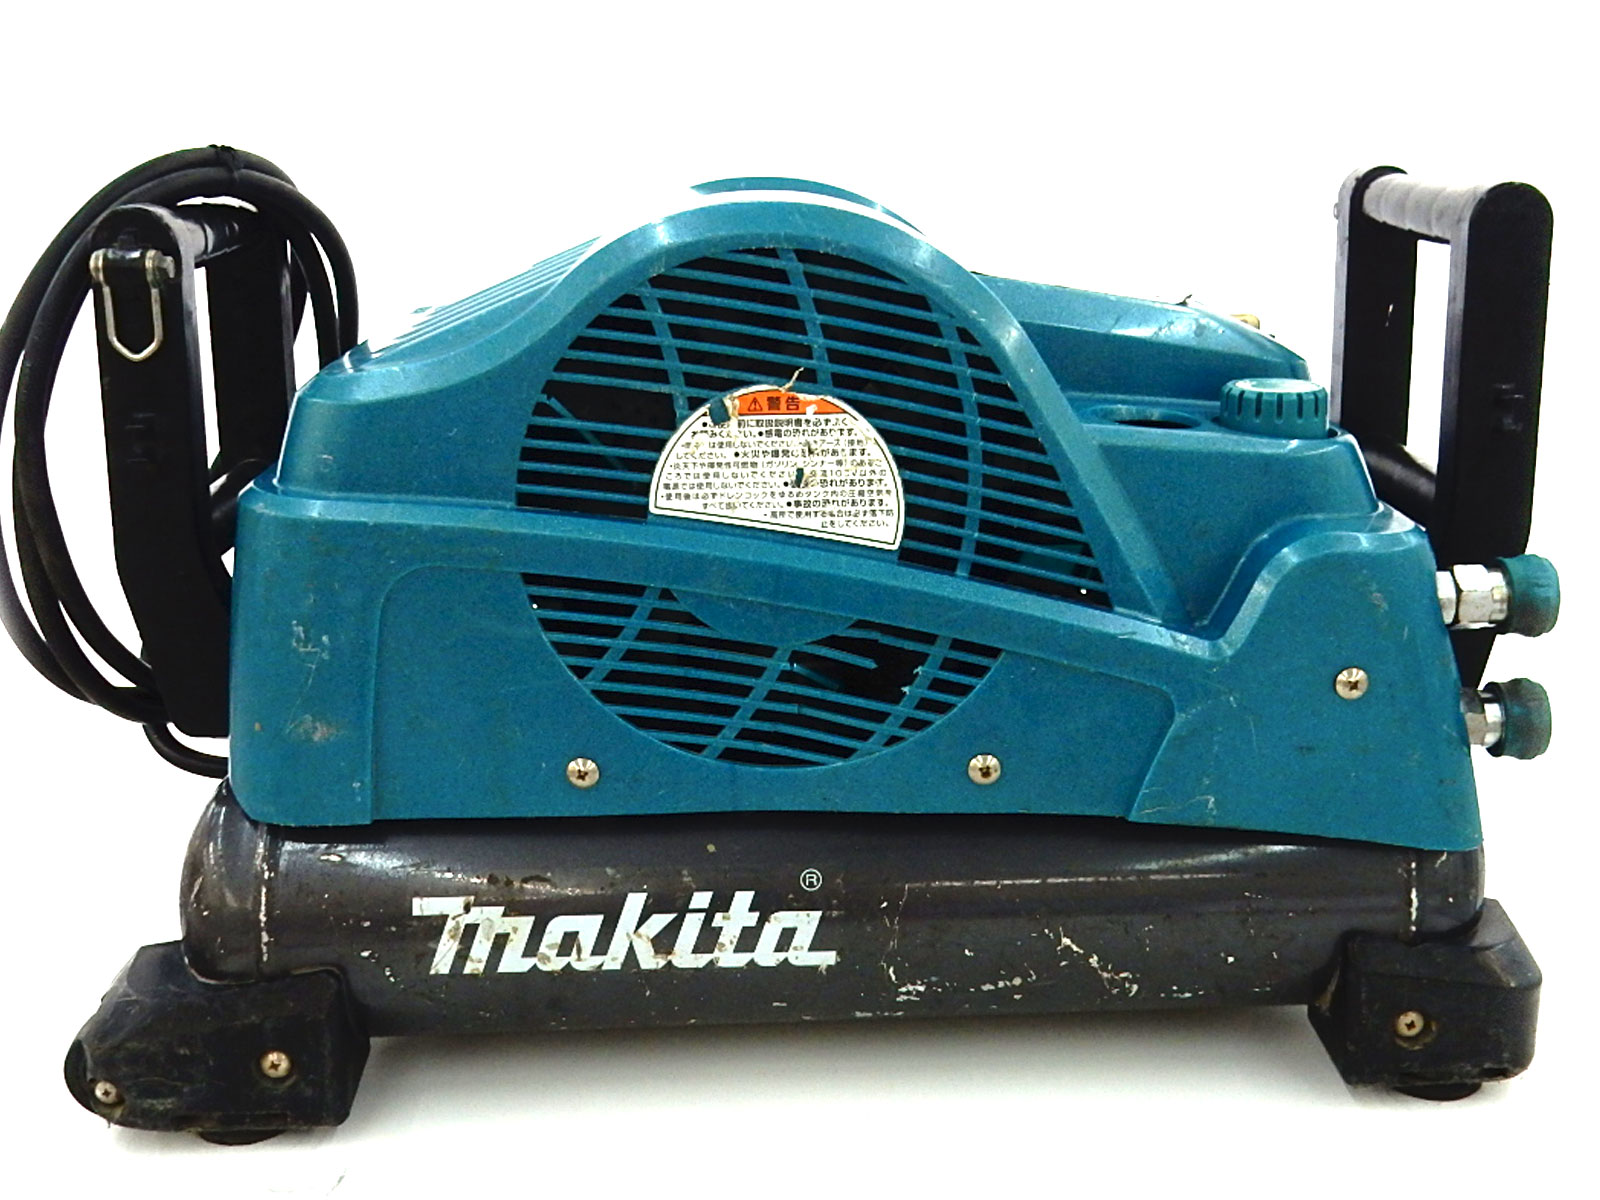 工具 makita マキタ 高圧/常圧 8L エアーコンプレッサー AC401X 買取 茨城 ニコニコ堂下妻店 | 中古品の高価買取・販売の